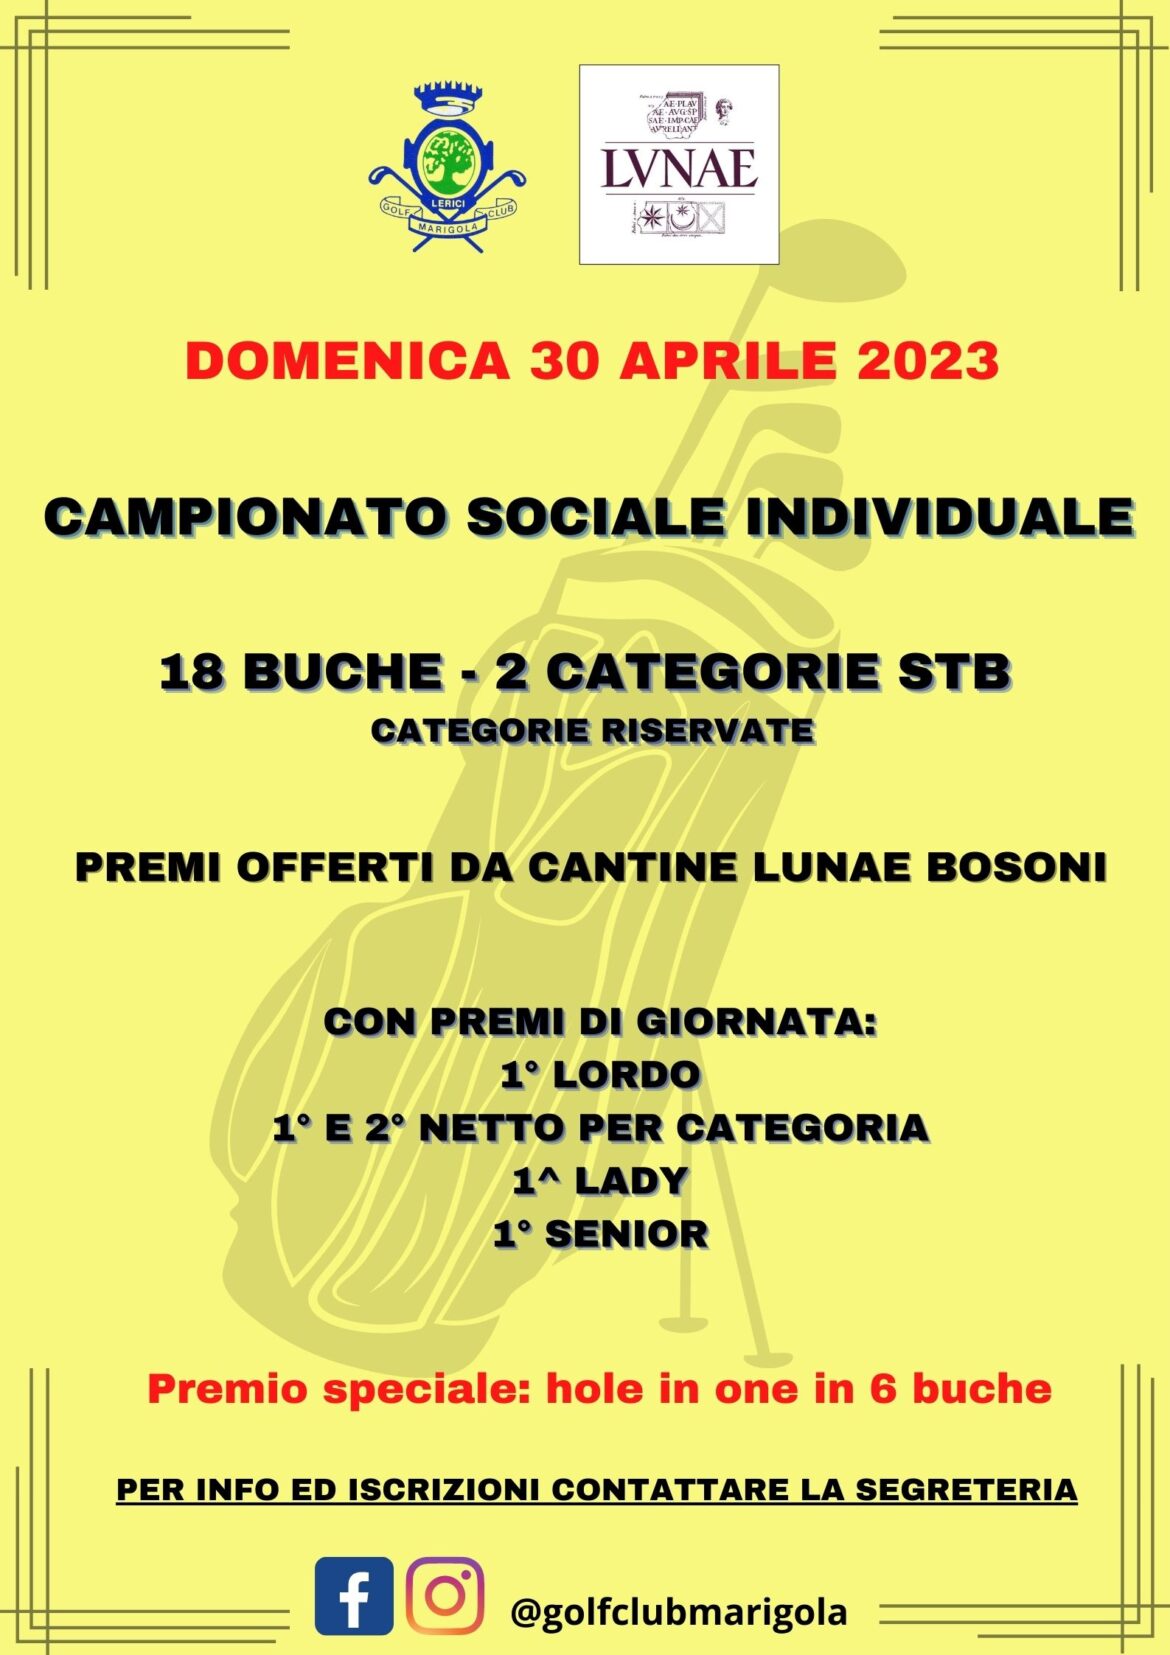 CAMPIONATO SOCIALE INDIVIDUALE – domenica 30 aprile 2023